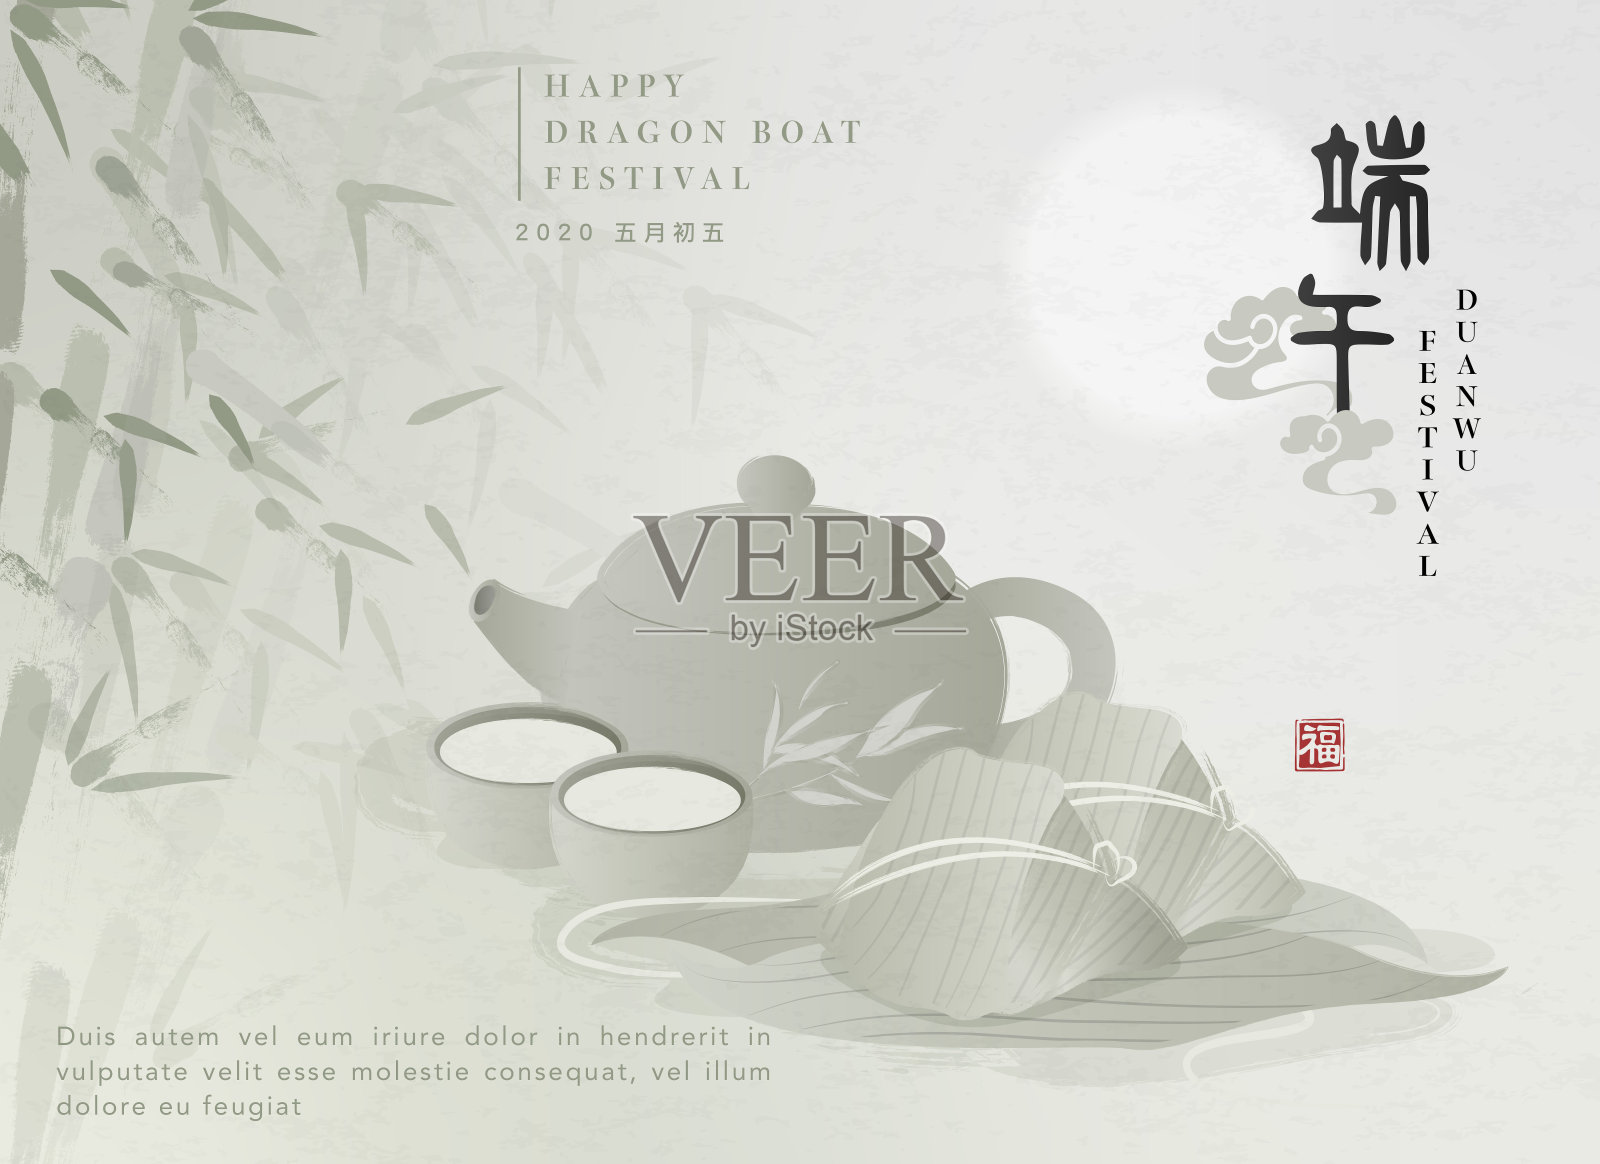 端午节快乐的背景模板传统食物粽子、茶壶杯和竹叶。中文翻译:端午和祝福设计模板素材